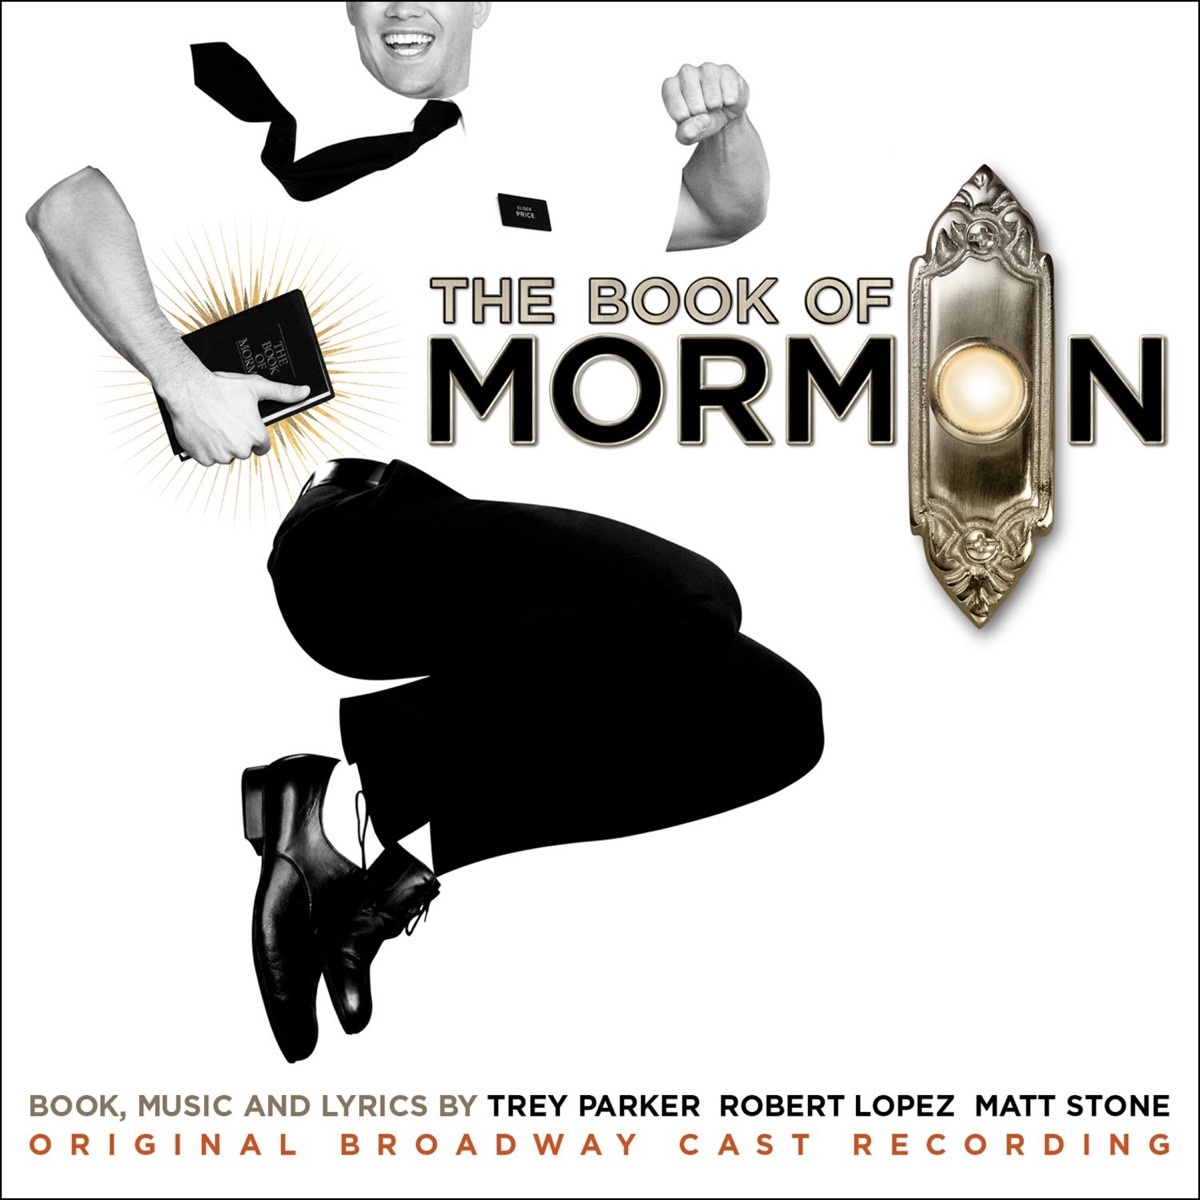 Book of Mormon cast recording